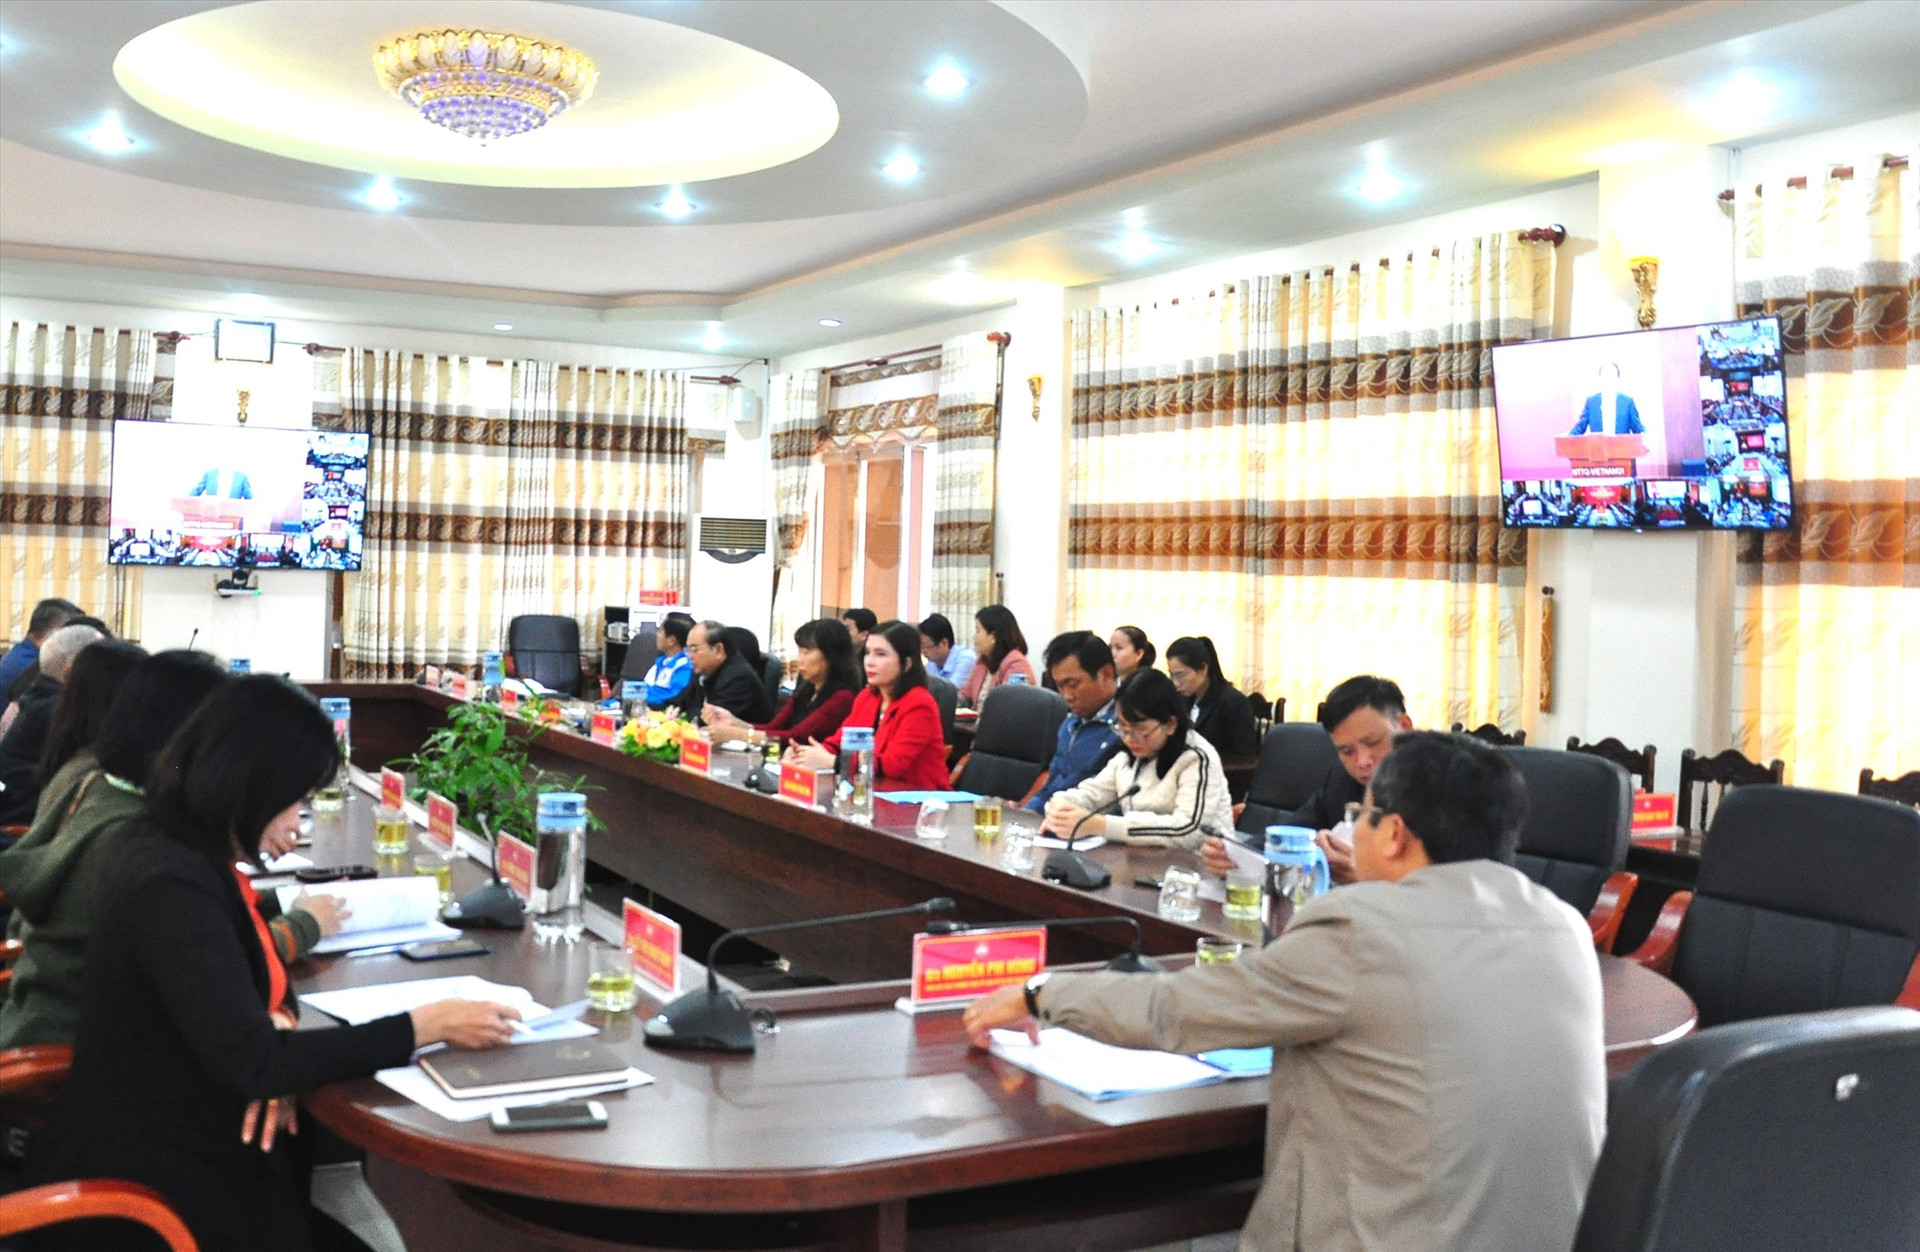 Các đại biểu tại điểm cầu Quảng Nam lắng nghe các nội dung quán triệt qua hệ thống hội nghị truyền hình trực tuyến. Ảnh: V.A